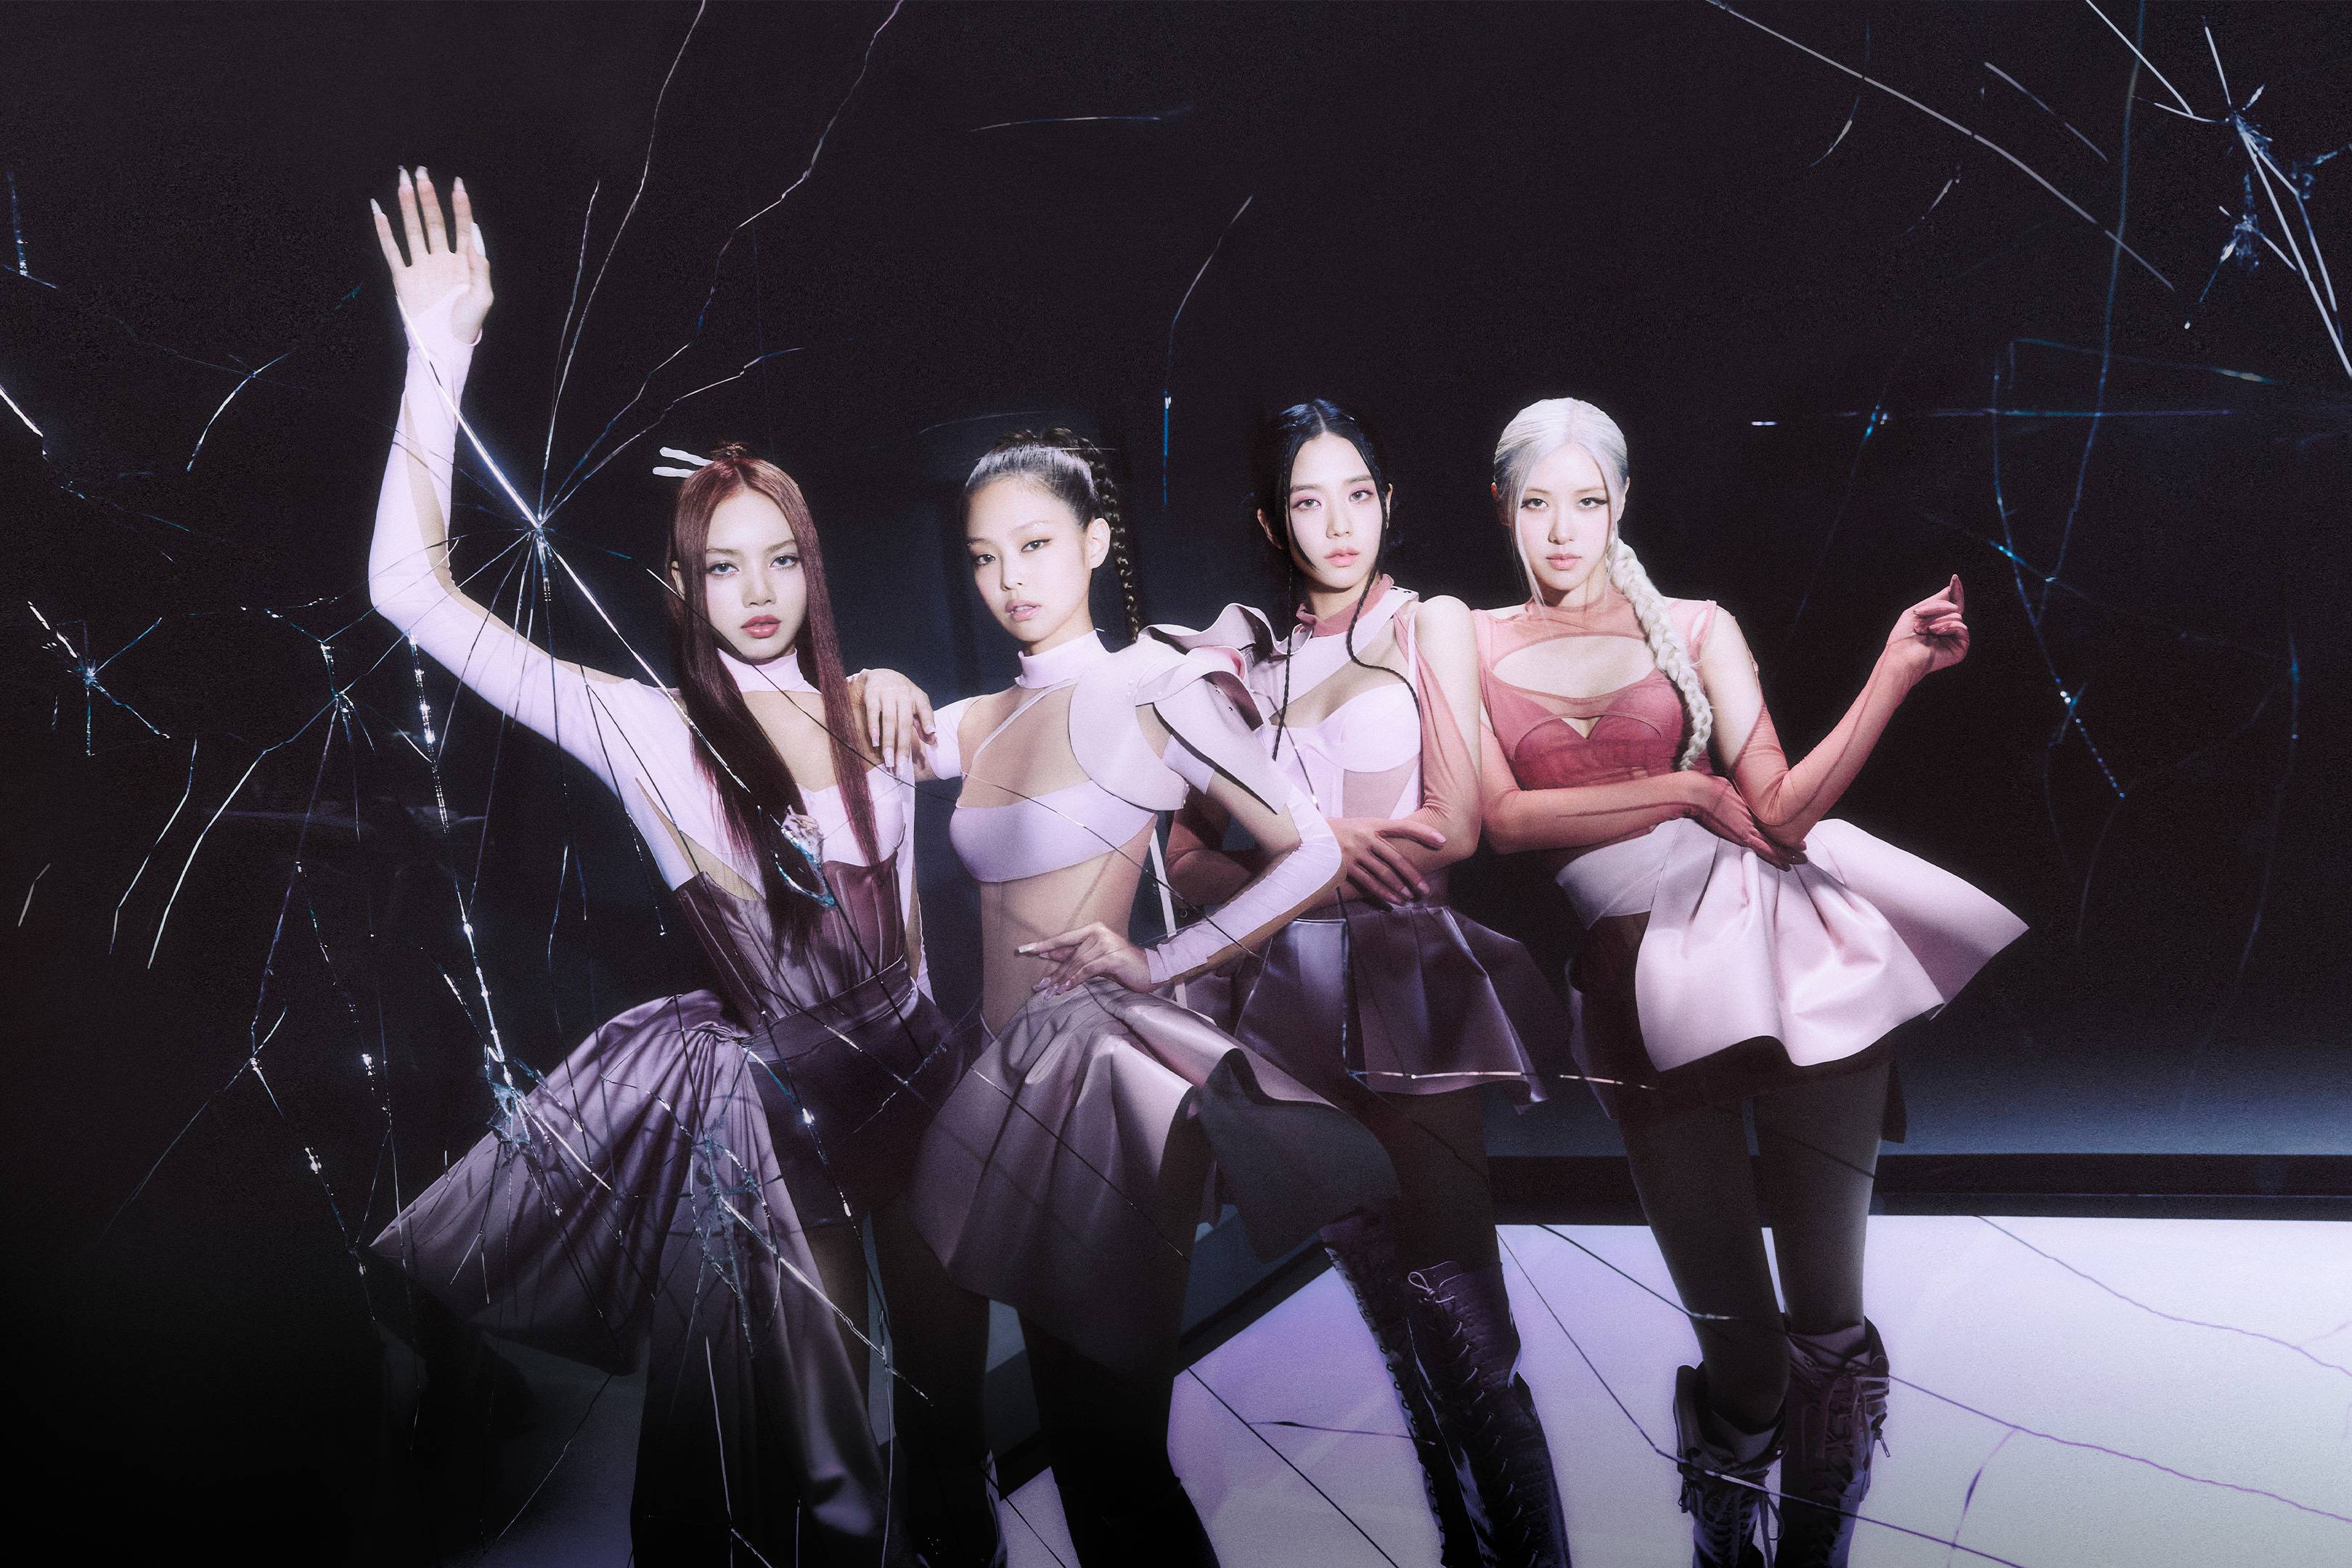 K-pop girl group Blackpink pose in a darkened room.